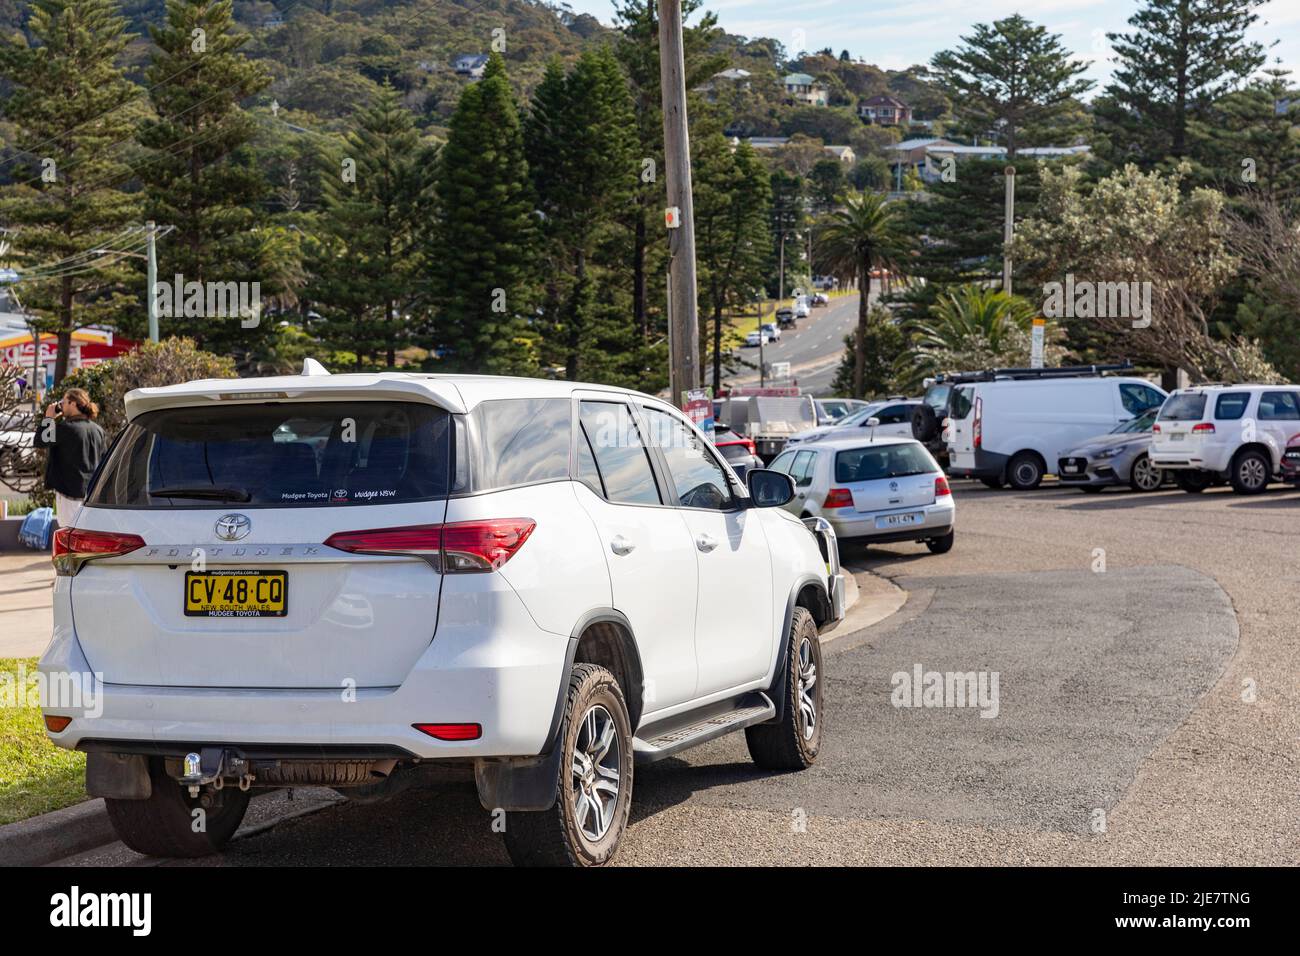 2020 Modell weißen Toyota Fortuner geparkt in Avalon Beach Sydney, ein mittelständisches Familie SUV-Typ Fahrzeug auch bekannt als Toyota Hilux SW4, Australien Stockfoto